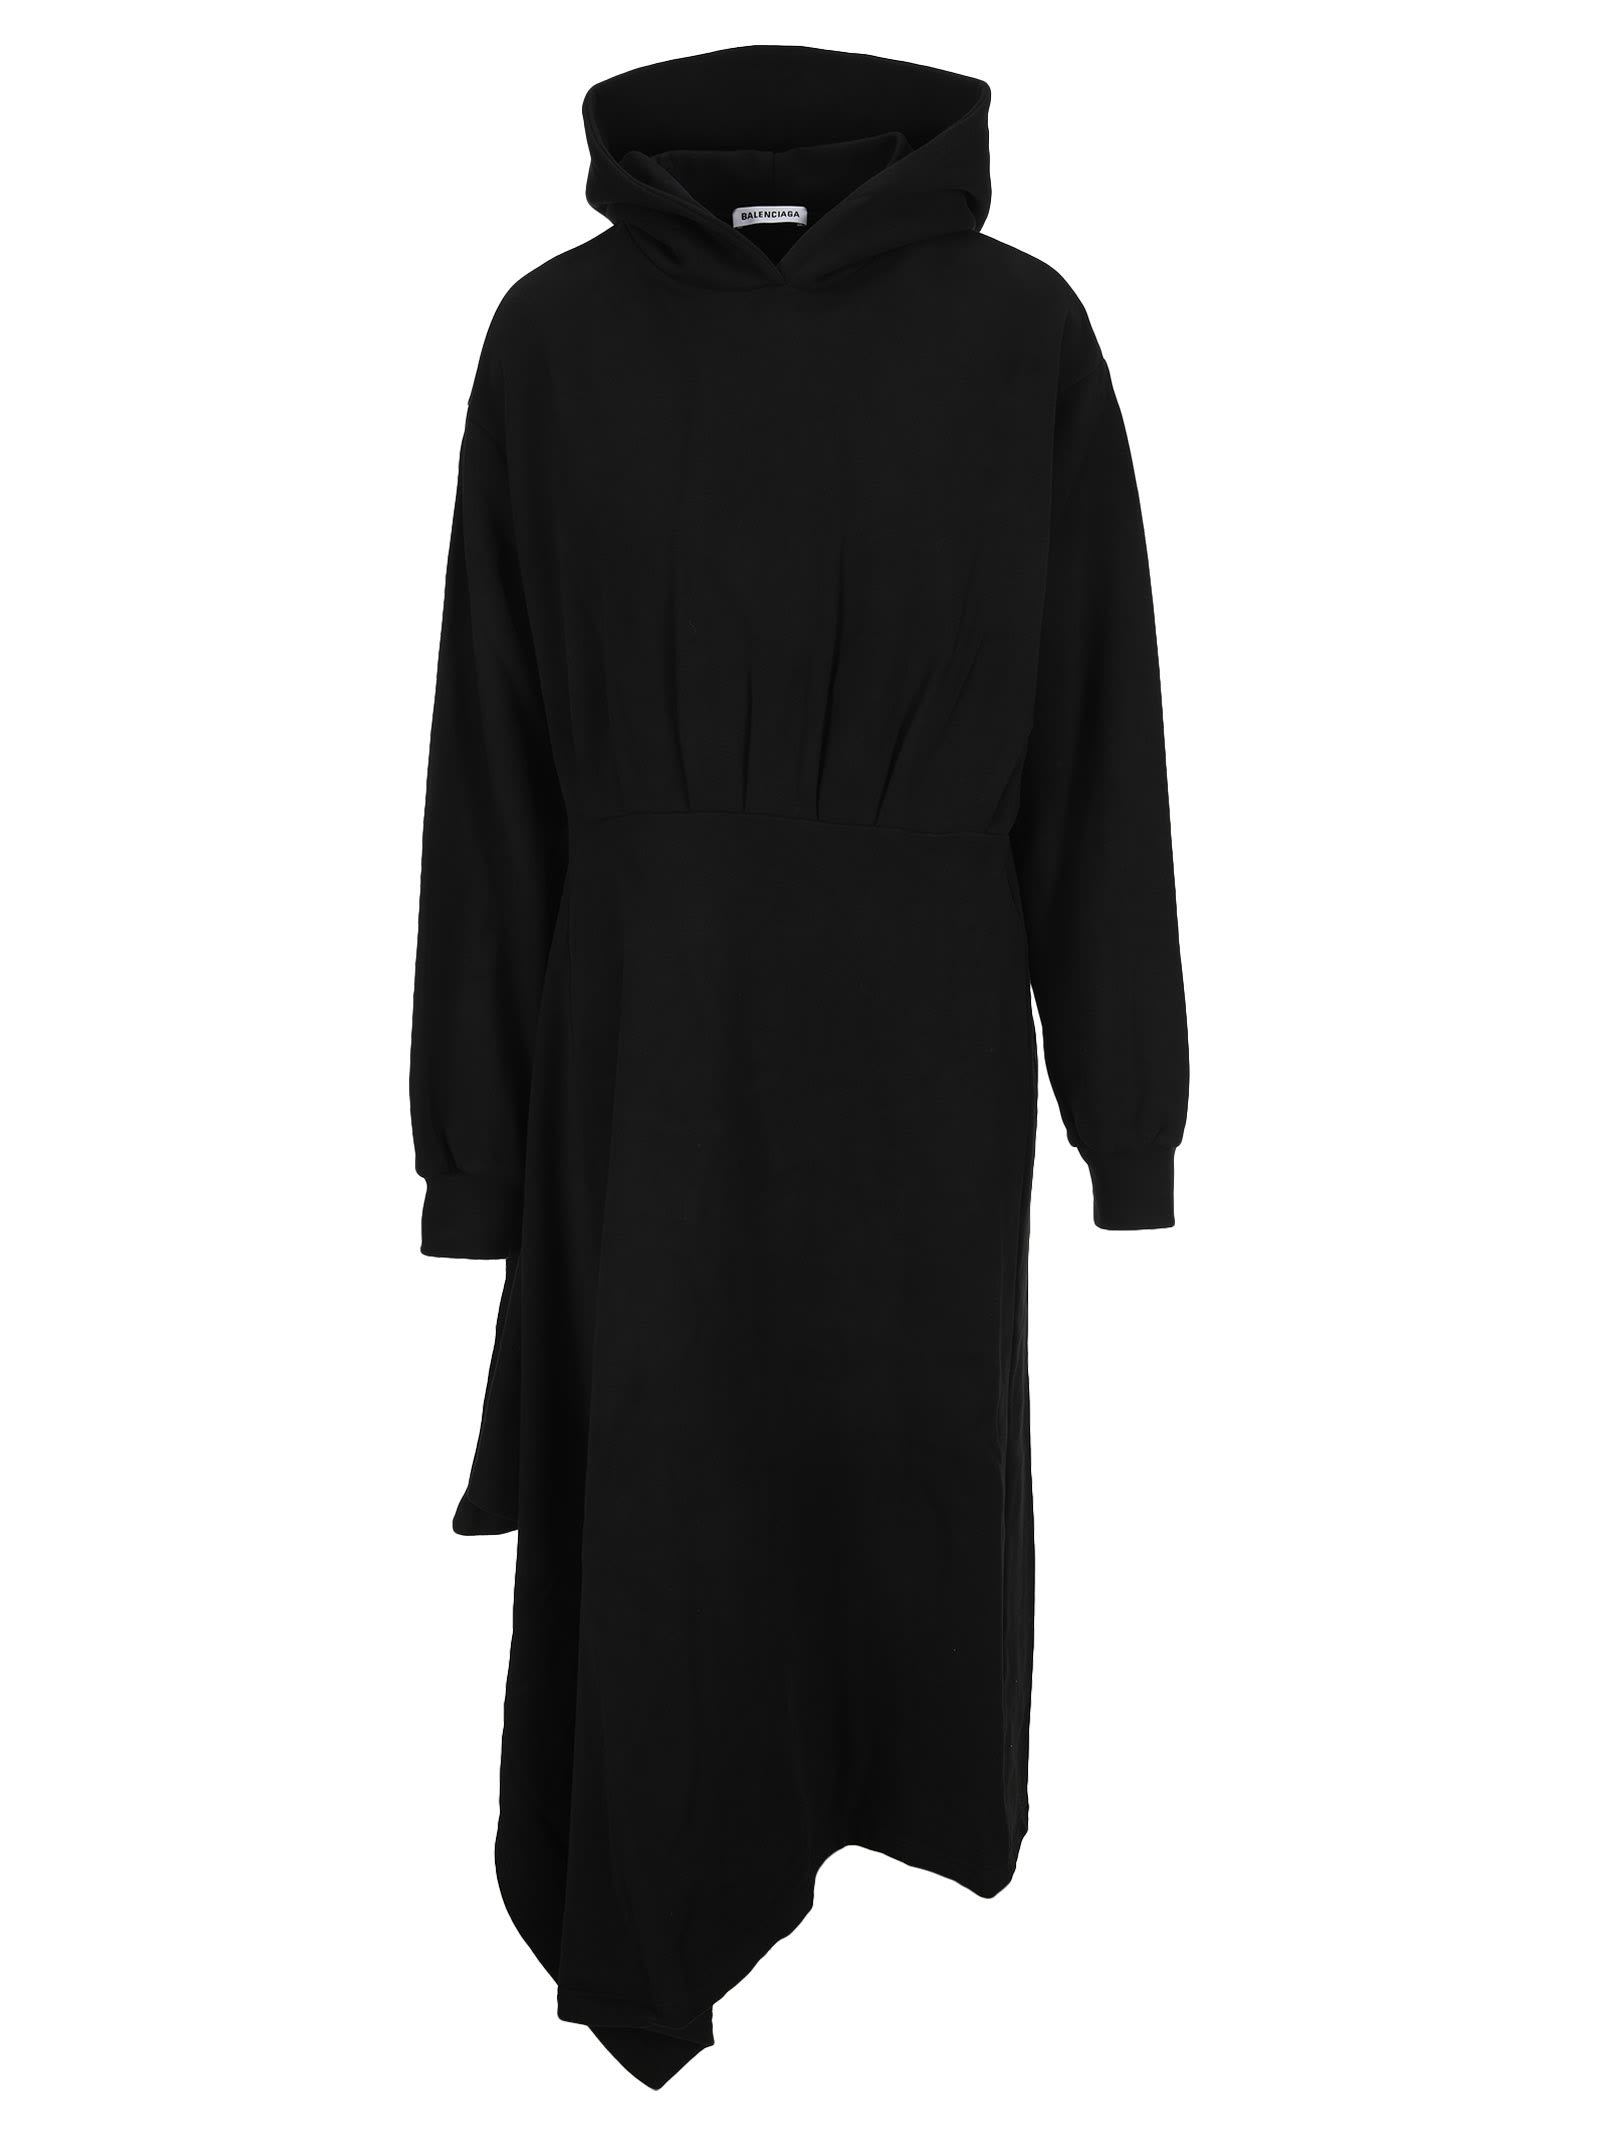 Balenciaga Easywrap Hooded Dress